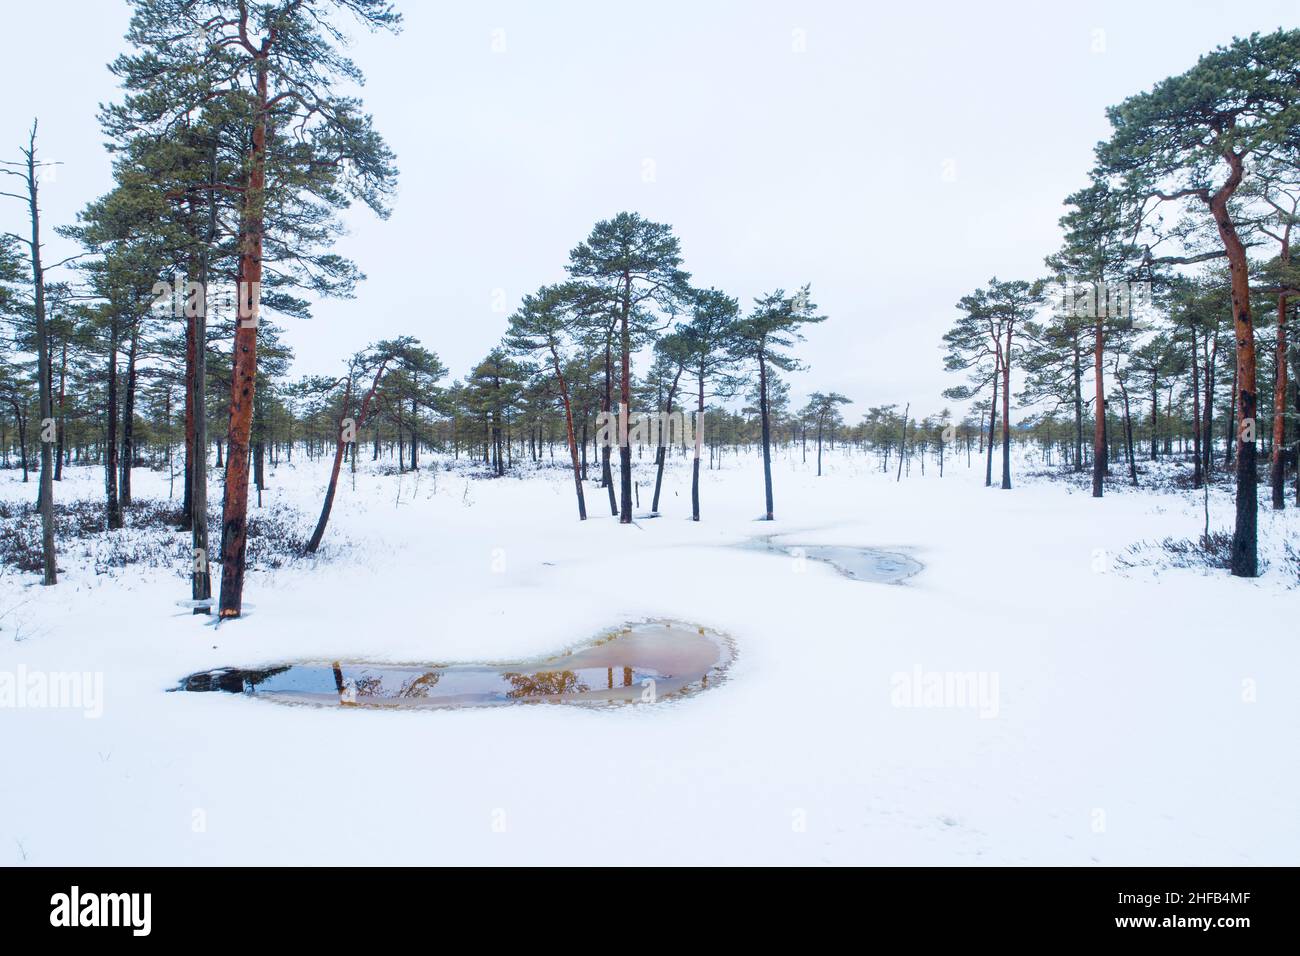 Des pins écossais dans un paysage de tourbières enneigées dans le parc national de Soomaa, en Estonie. Banque D'Images